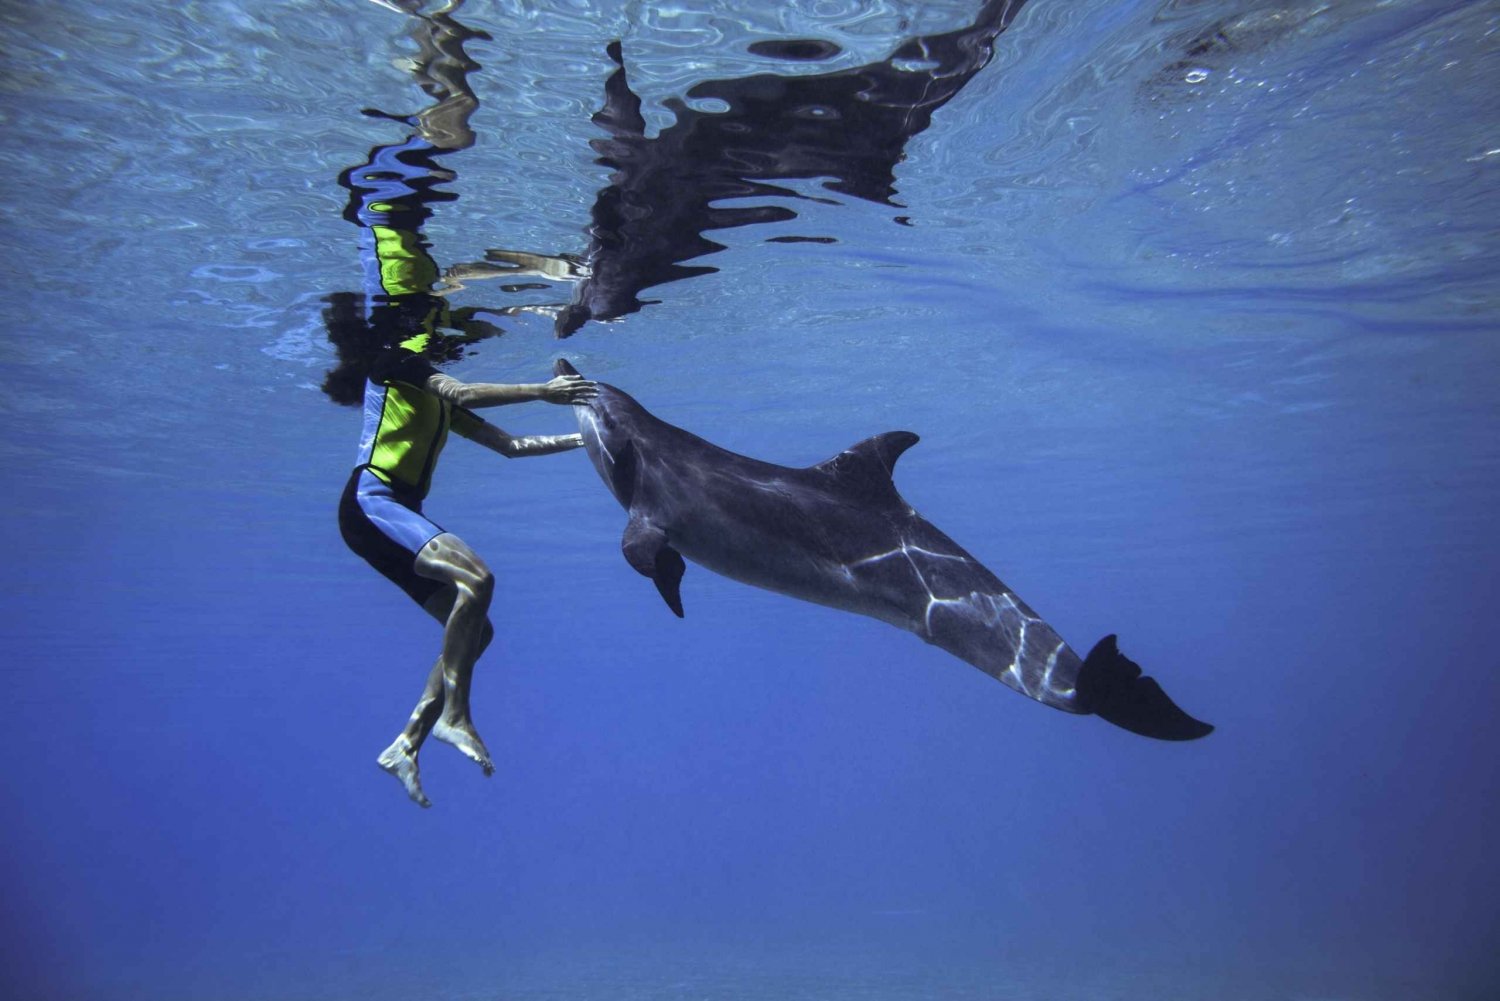 Dubai: Nade com golfinhos no Atlantis Waterpark